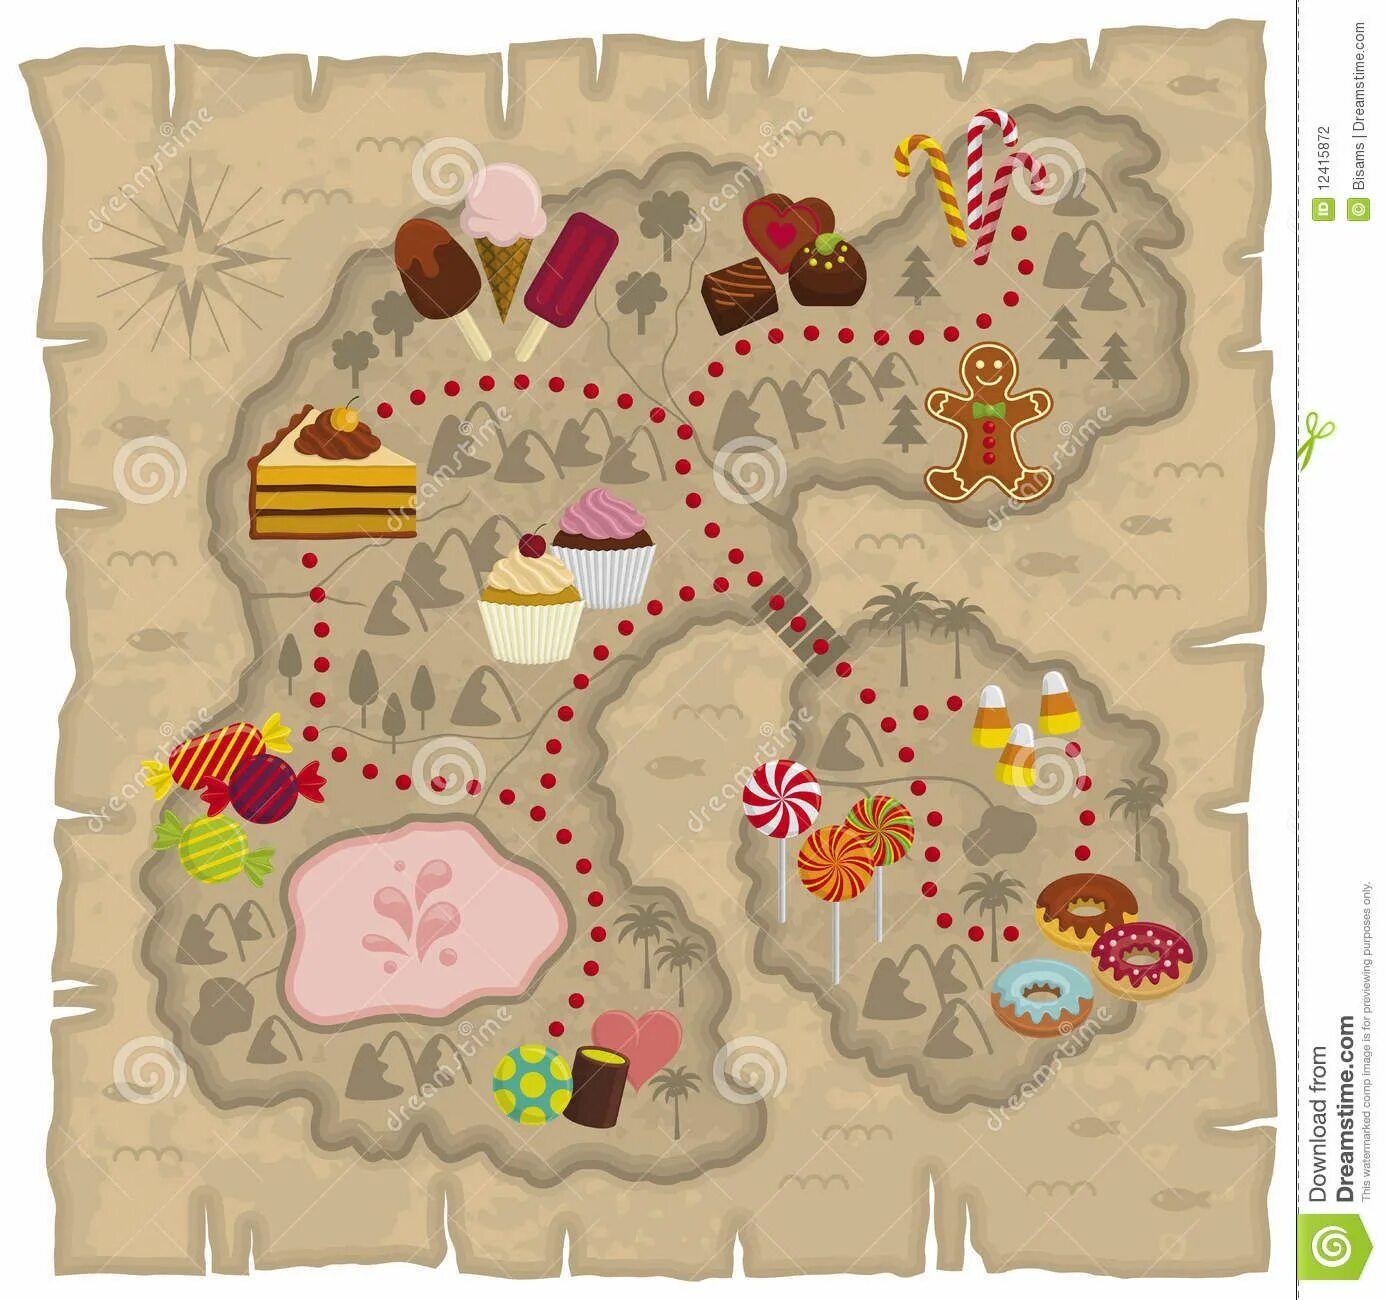 Карта сладостей. Карта путешествия в волшебную страну. Карта конфетной страны. Карта сказочного царства для игры.